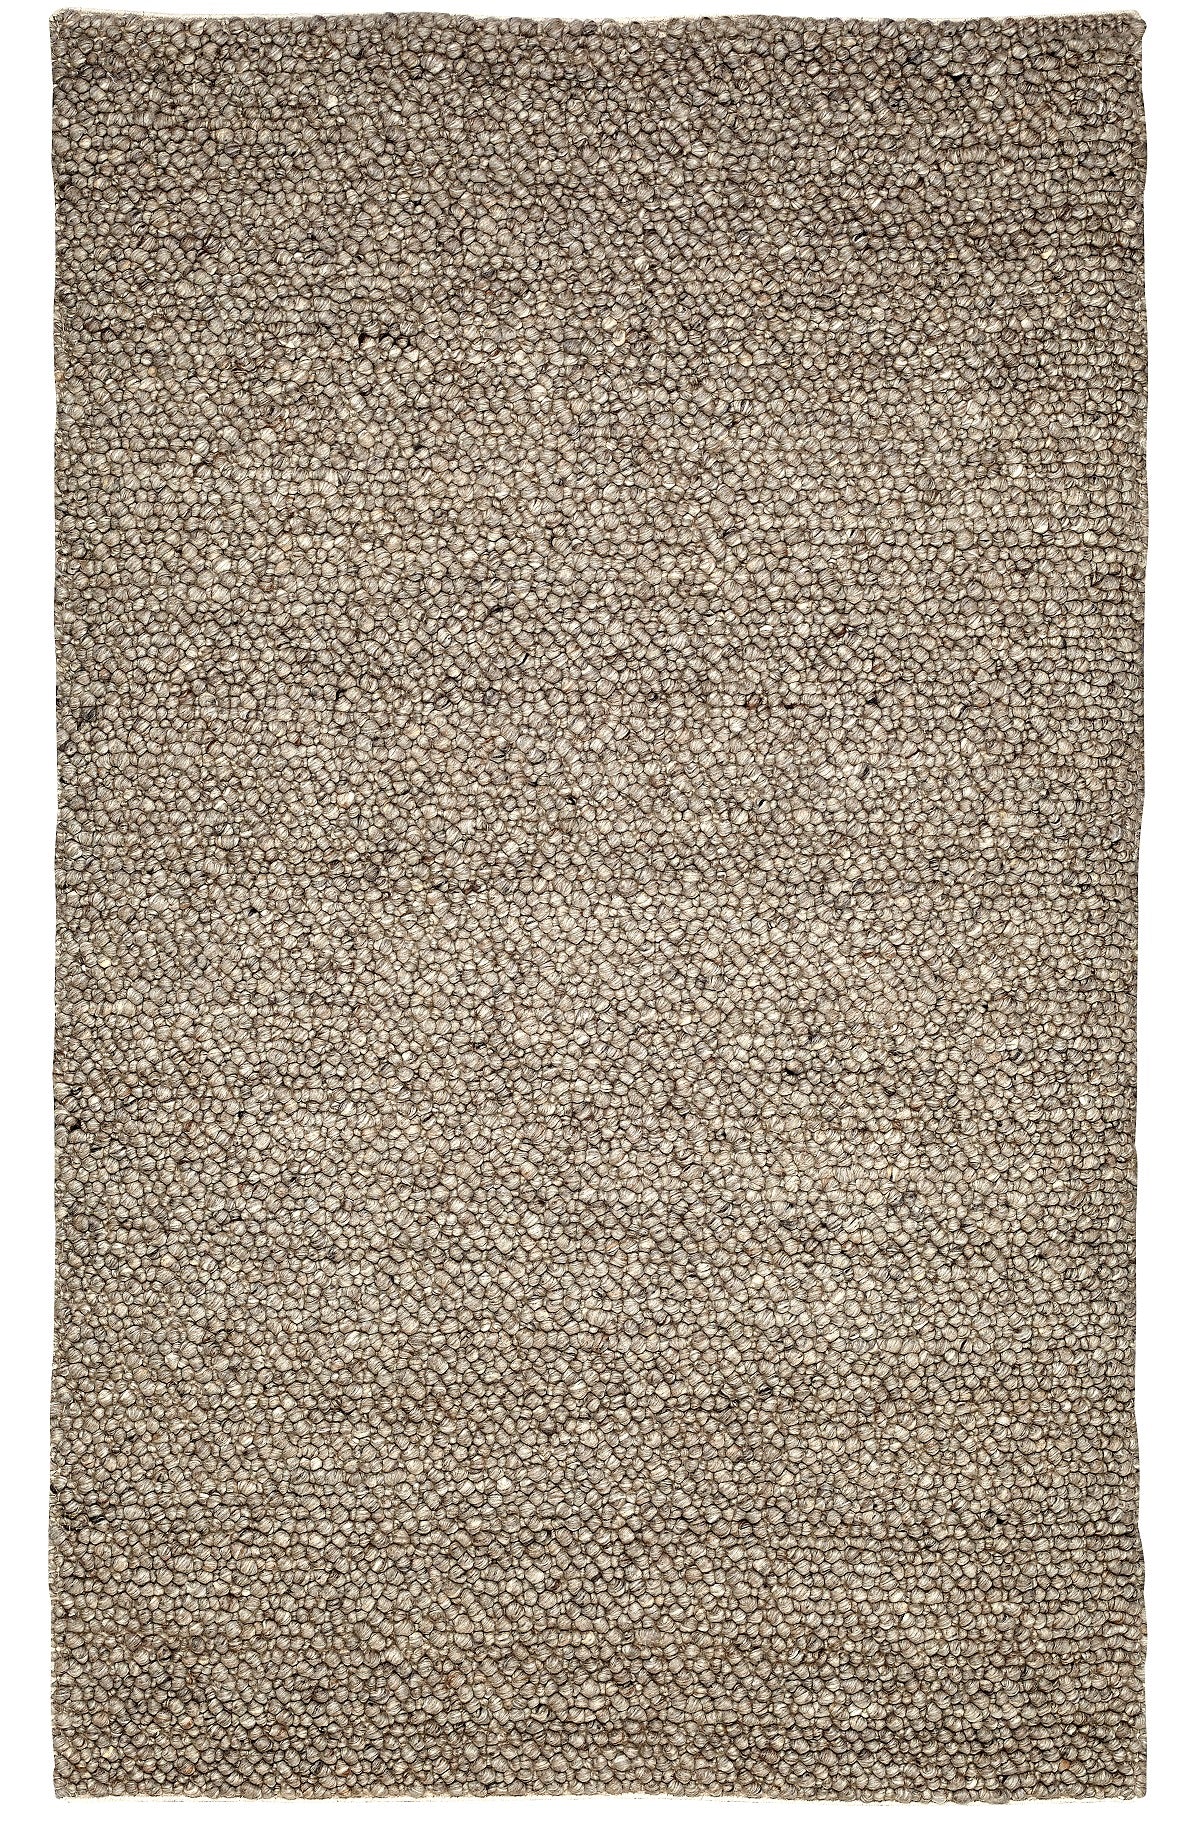 Tapis gris en laine fait main de galets luxueux et moderne